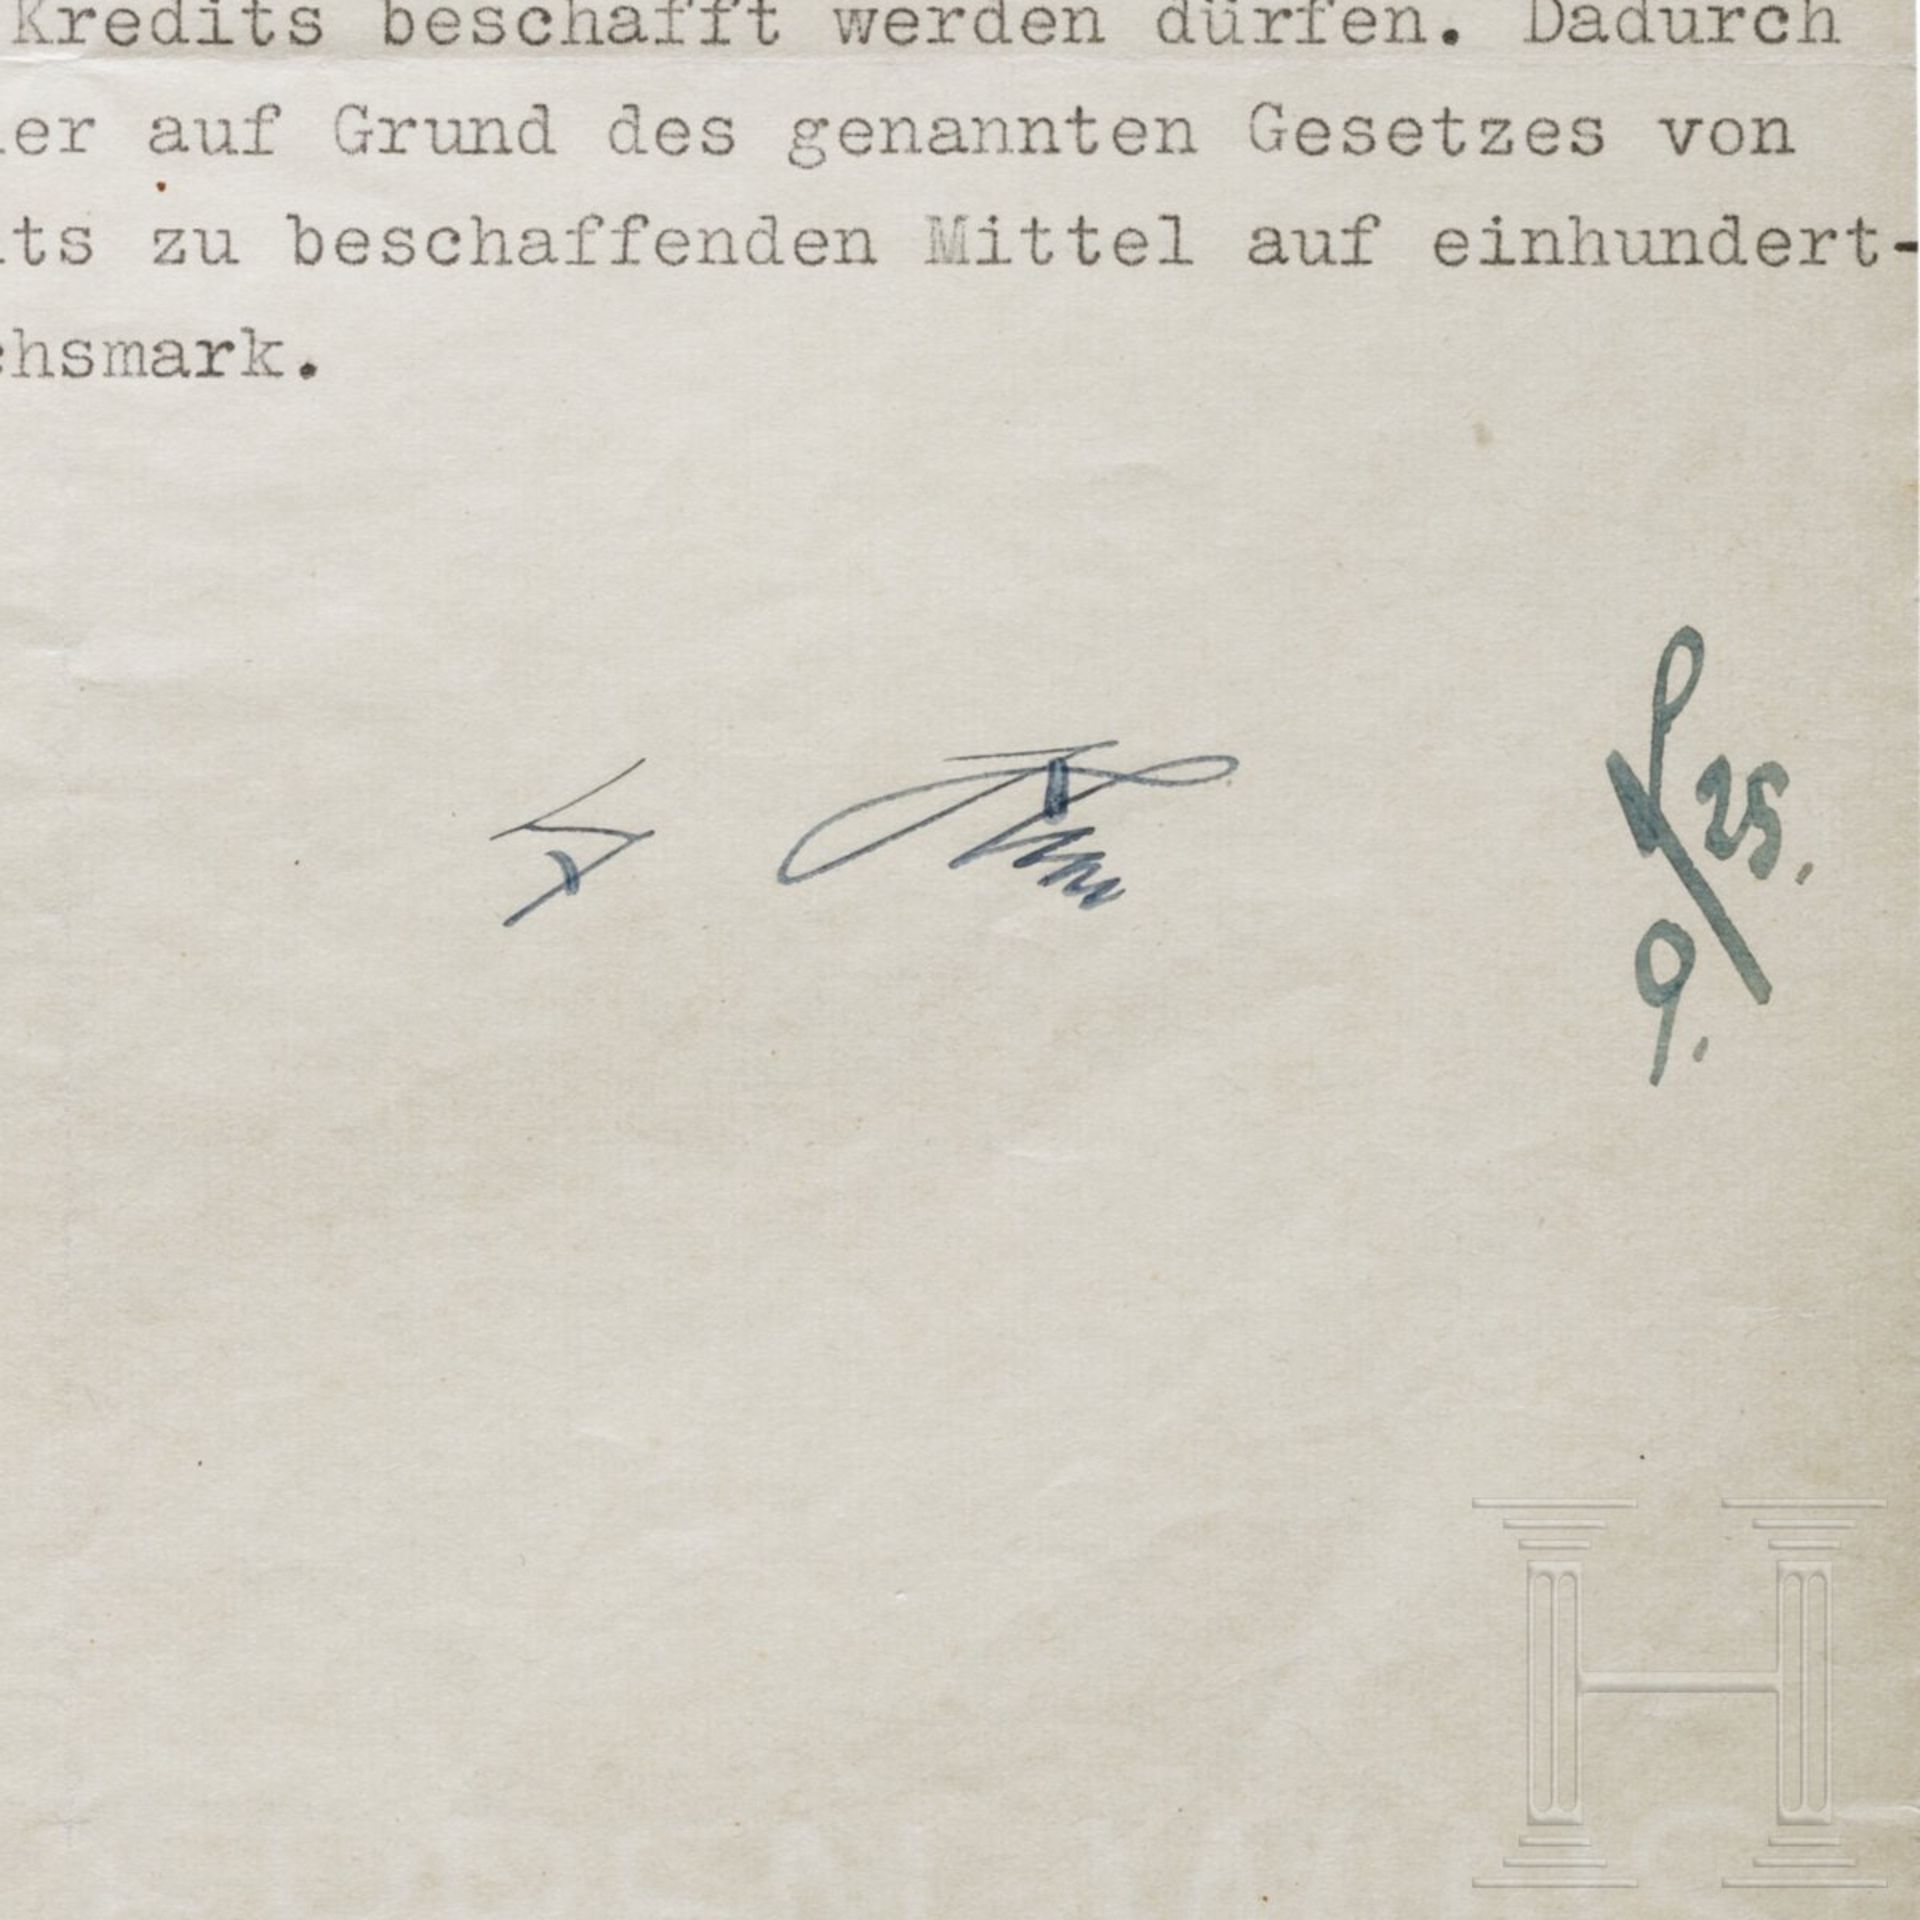 Adolf Hitler - Kreditermächtigung vom 25. September 1941 mit einer Erhöhung von 120 auf 130 Milliard - Image 3 of 3